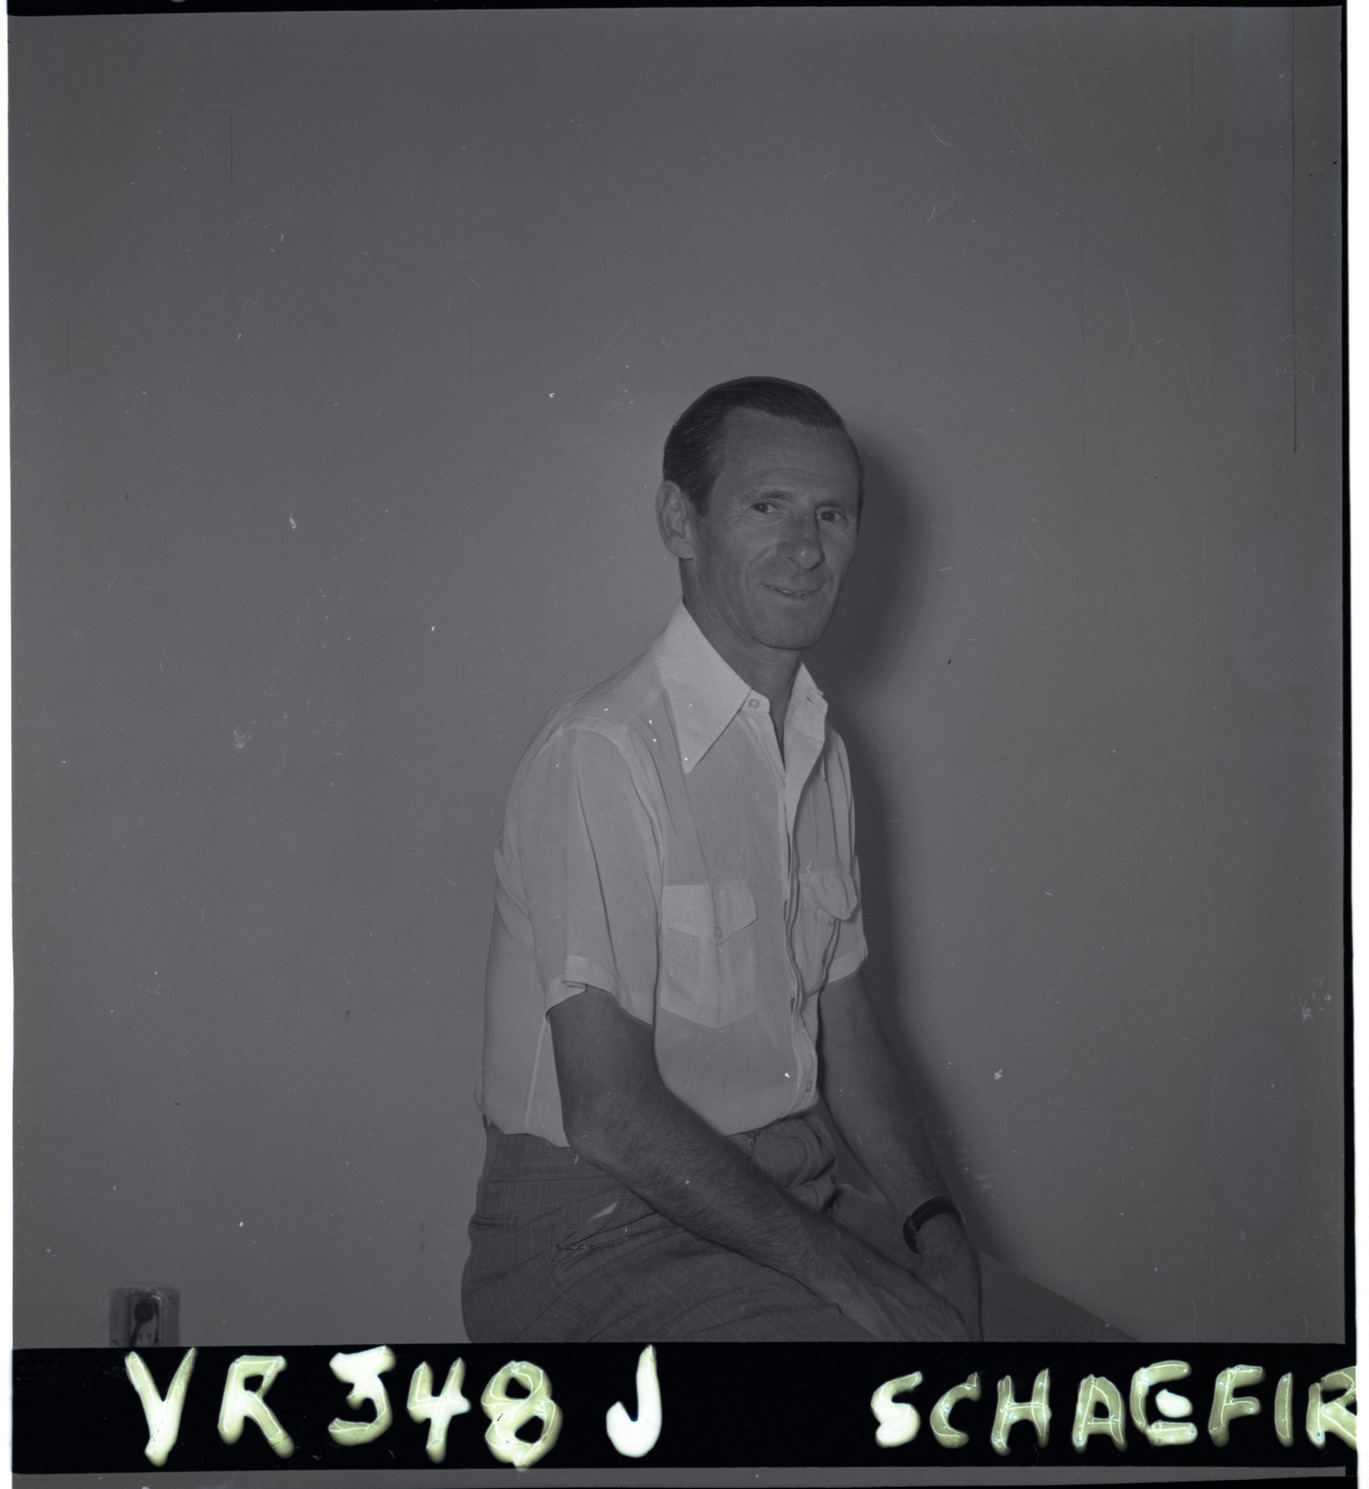 Schaefer, Image 03